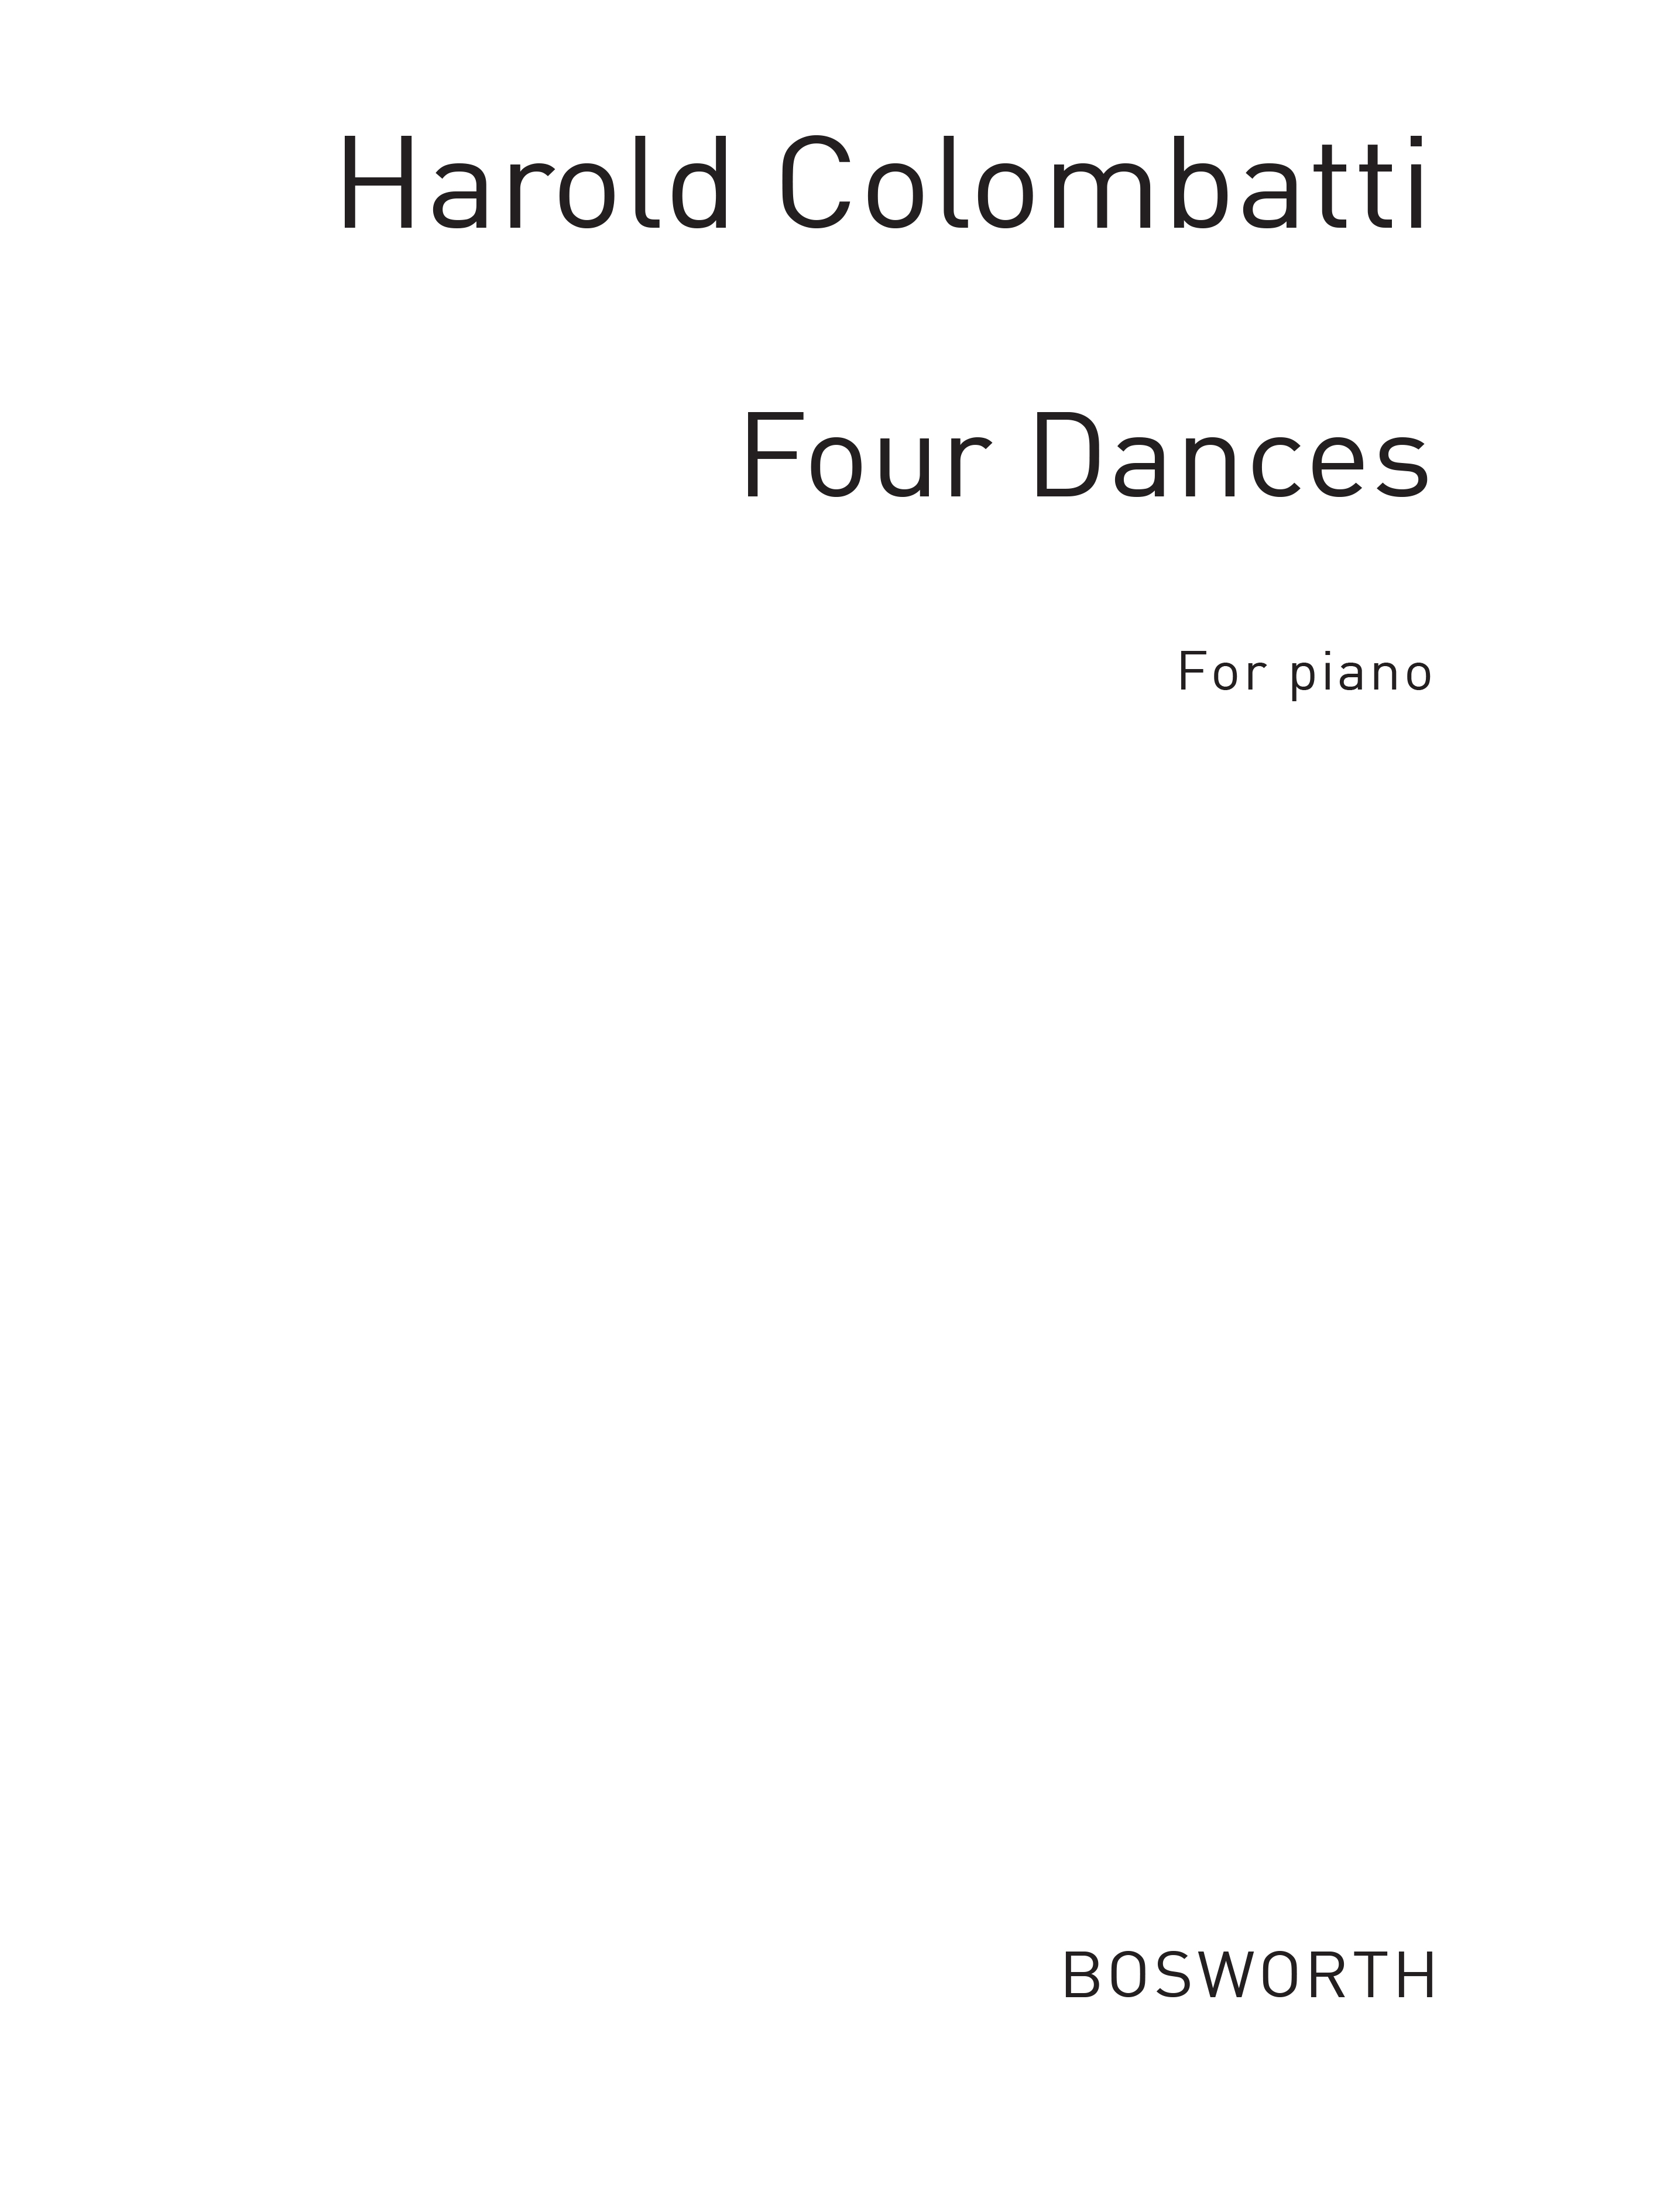 Harold Colombatti: Colombatti  H Four Dances Piano: Piano: Instrumental Work